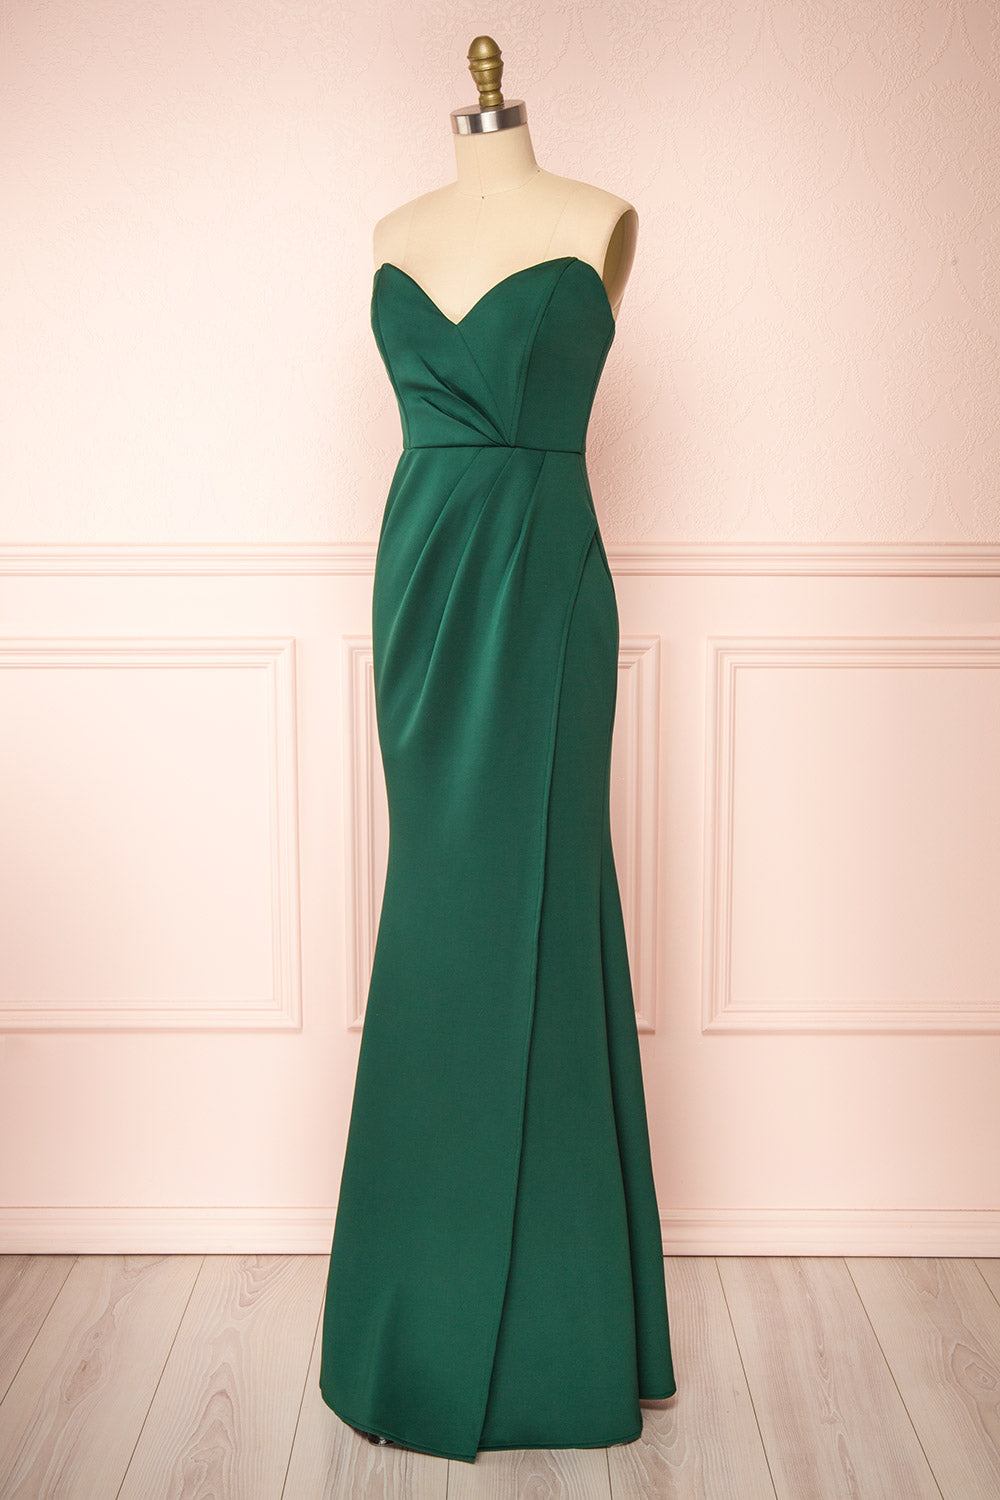 Nagini Green Draped Strapless Maxi Dress w/ Slit